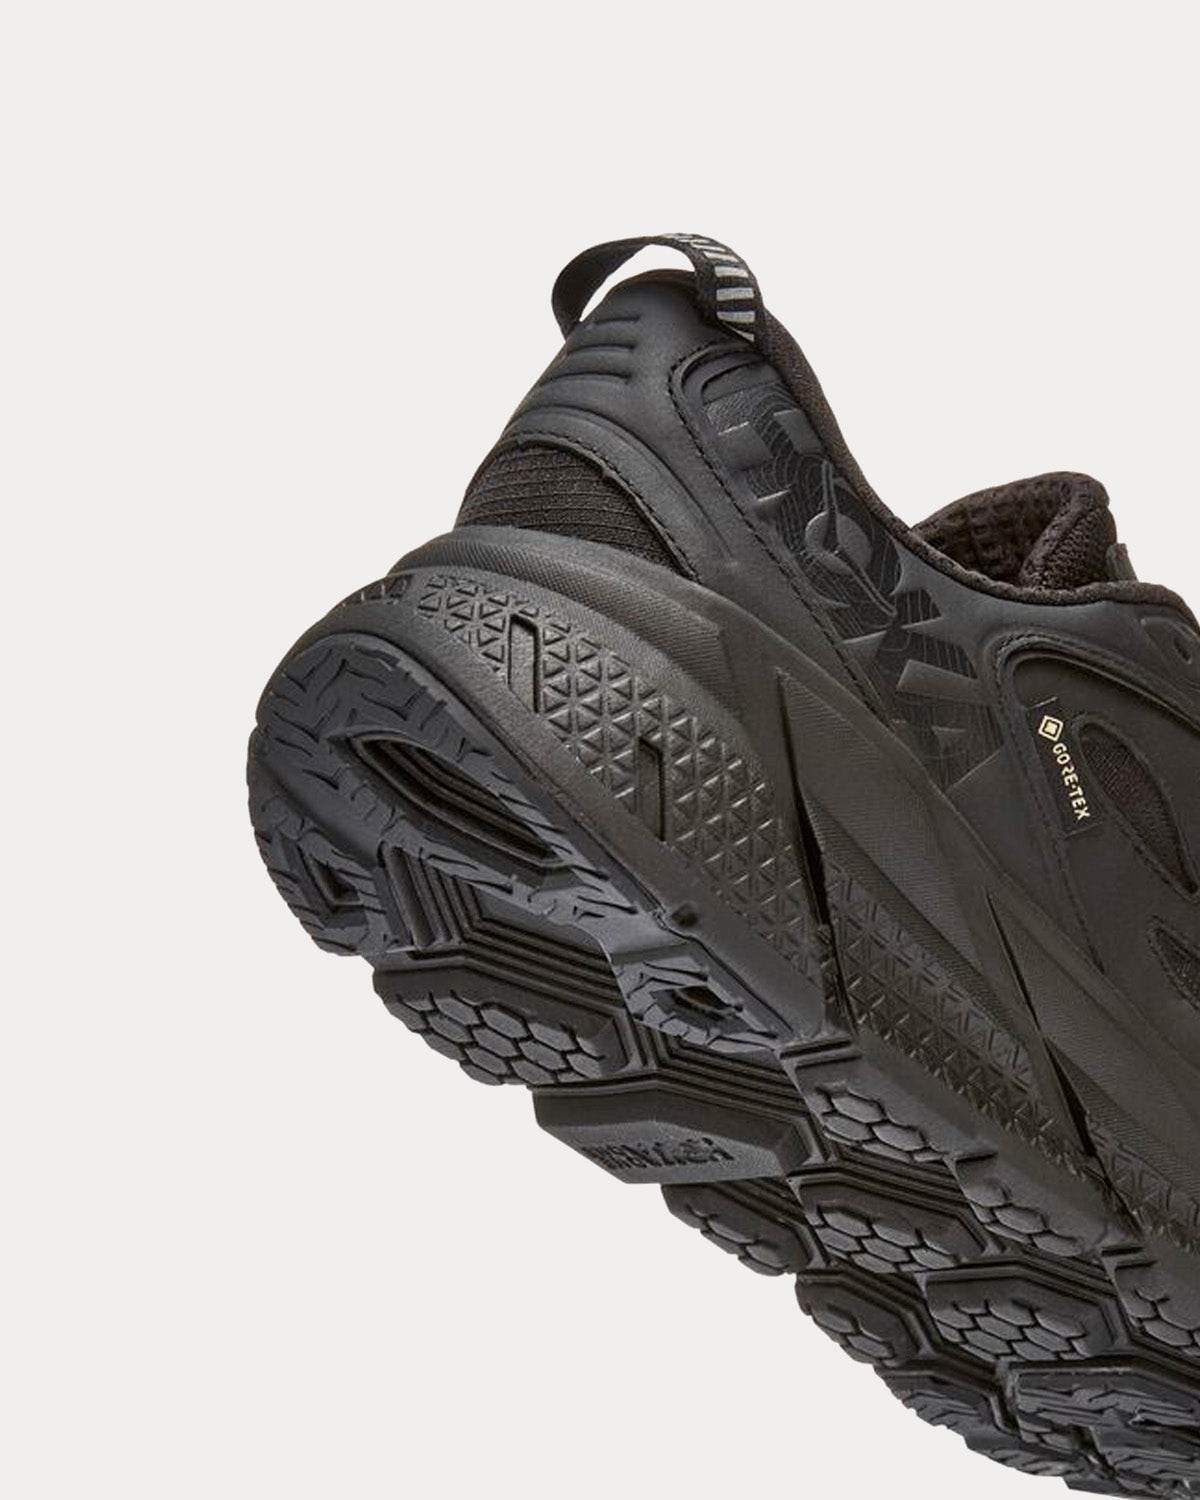 Hoka - Clifton L GORE-TEX Black / Black Running Shoes